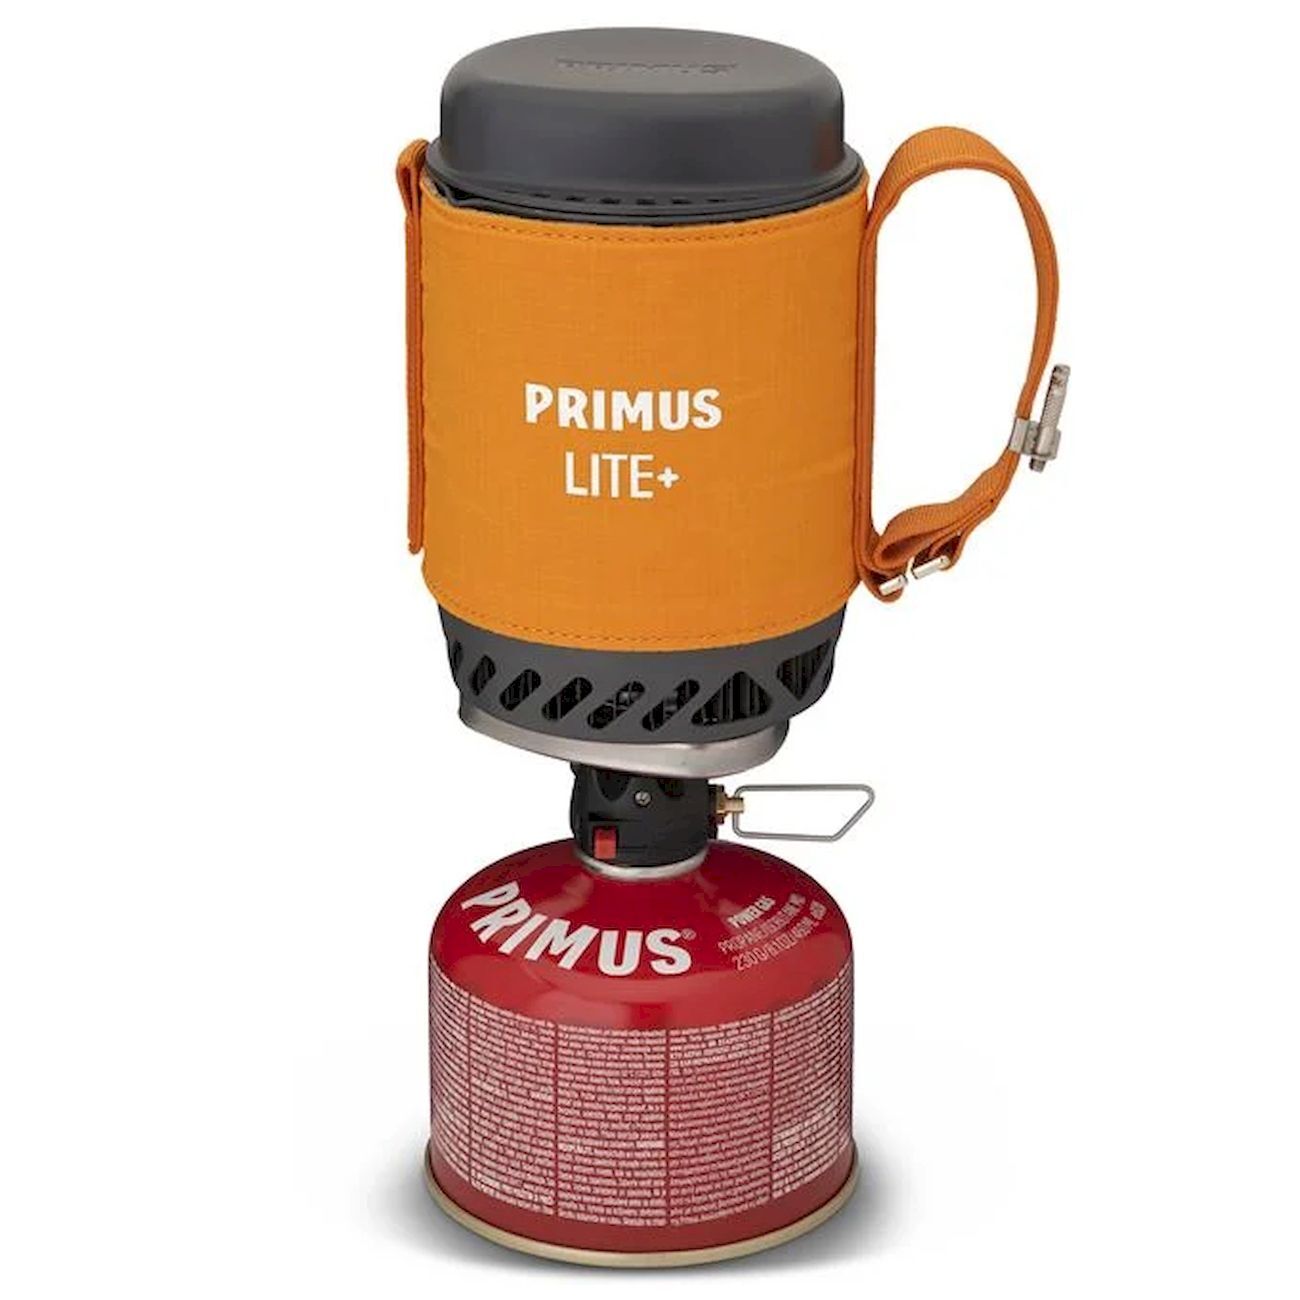 Primus Lite Plus Stove System - Fornello a gas